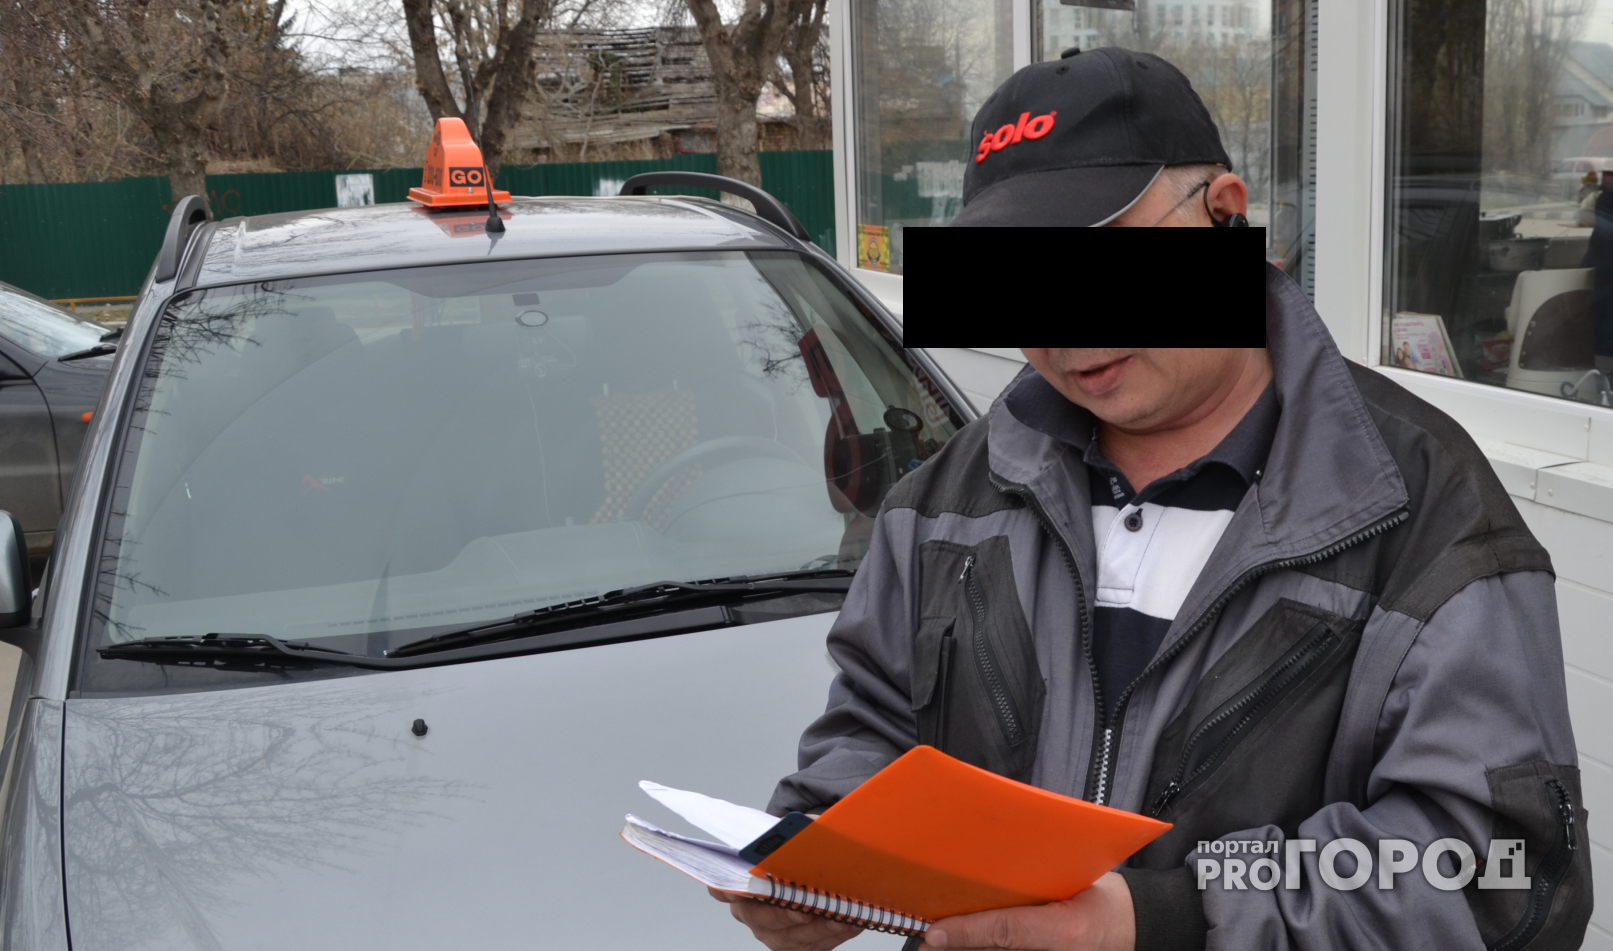 В Моргаушском районе владелец такси устранял конкурентов угрозами